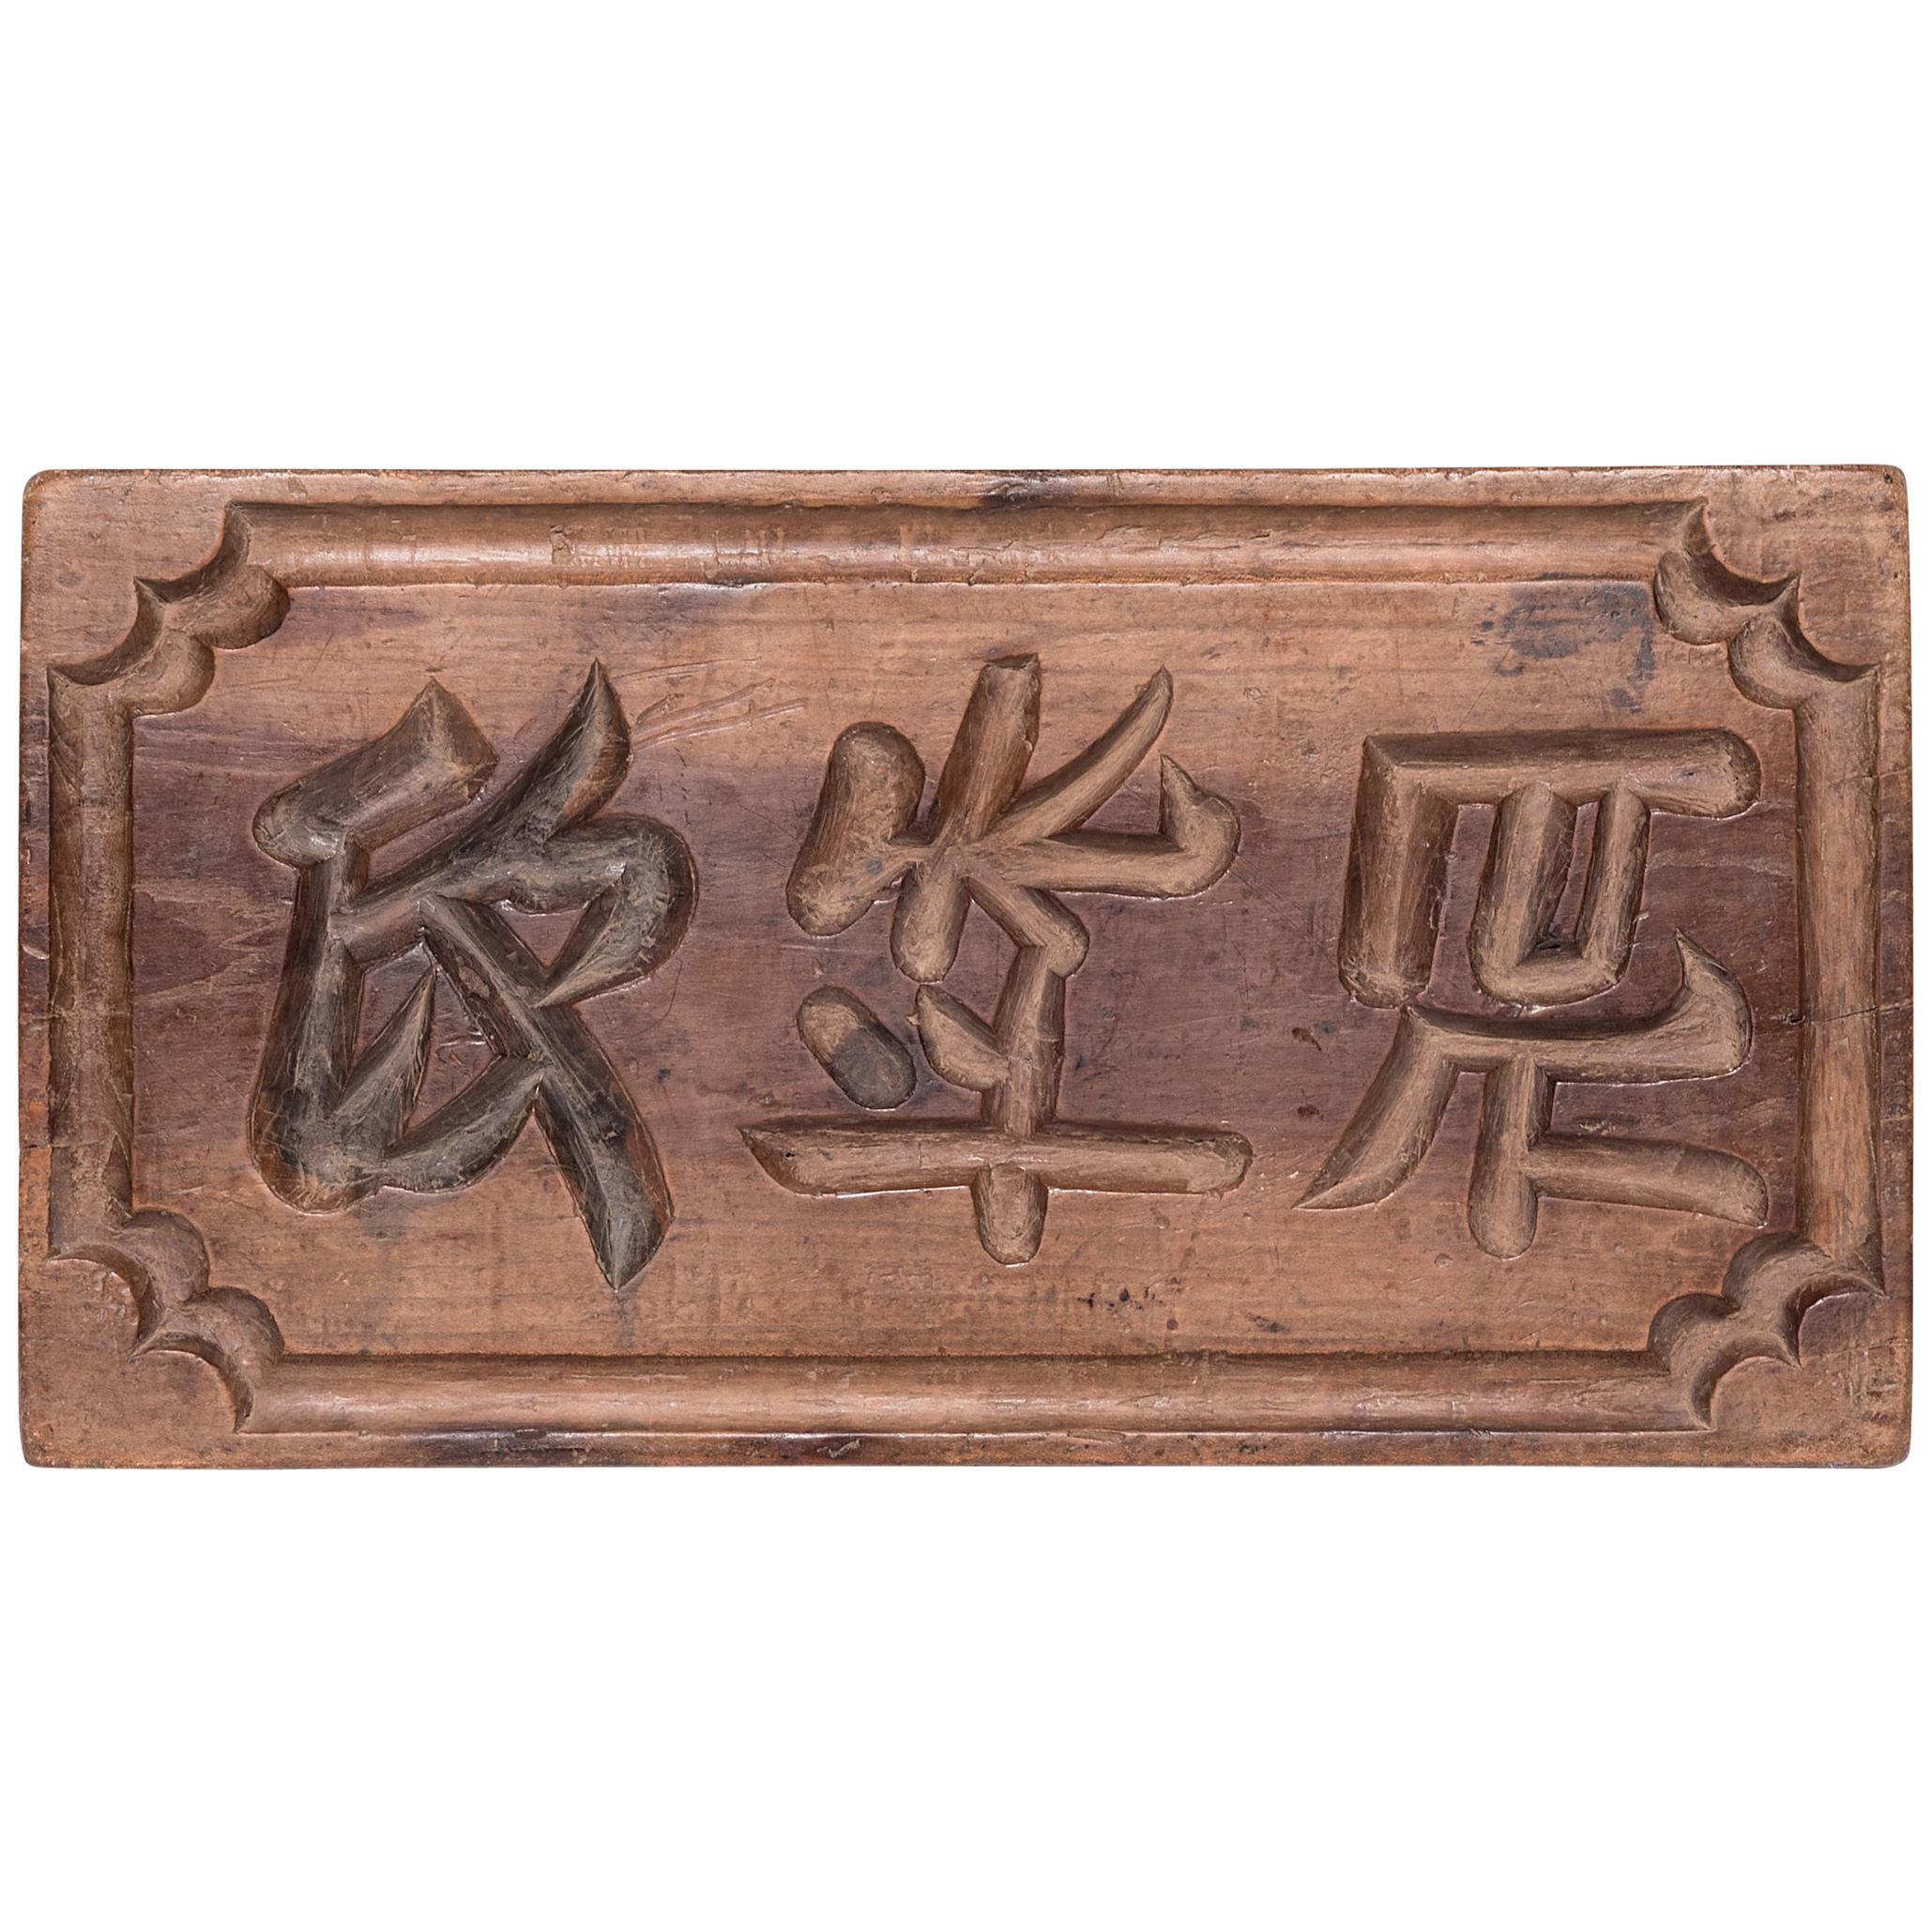 Chinese Handheld Ink Block, c. 1900